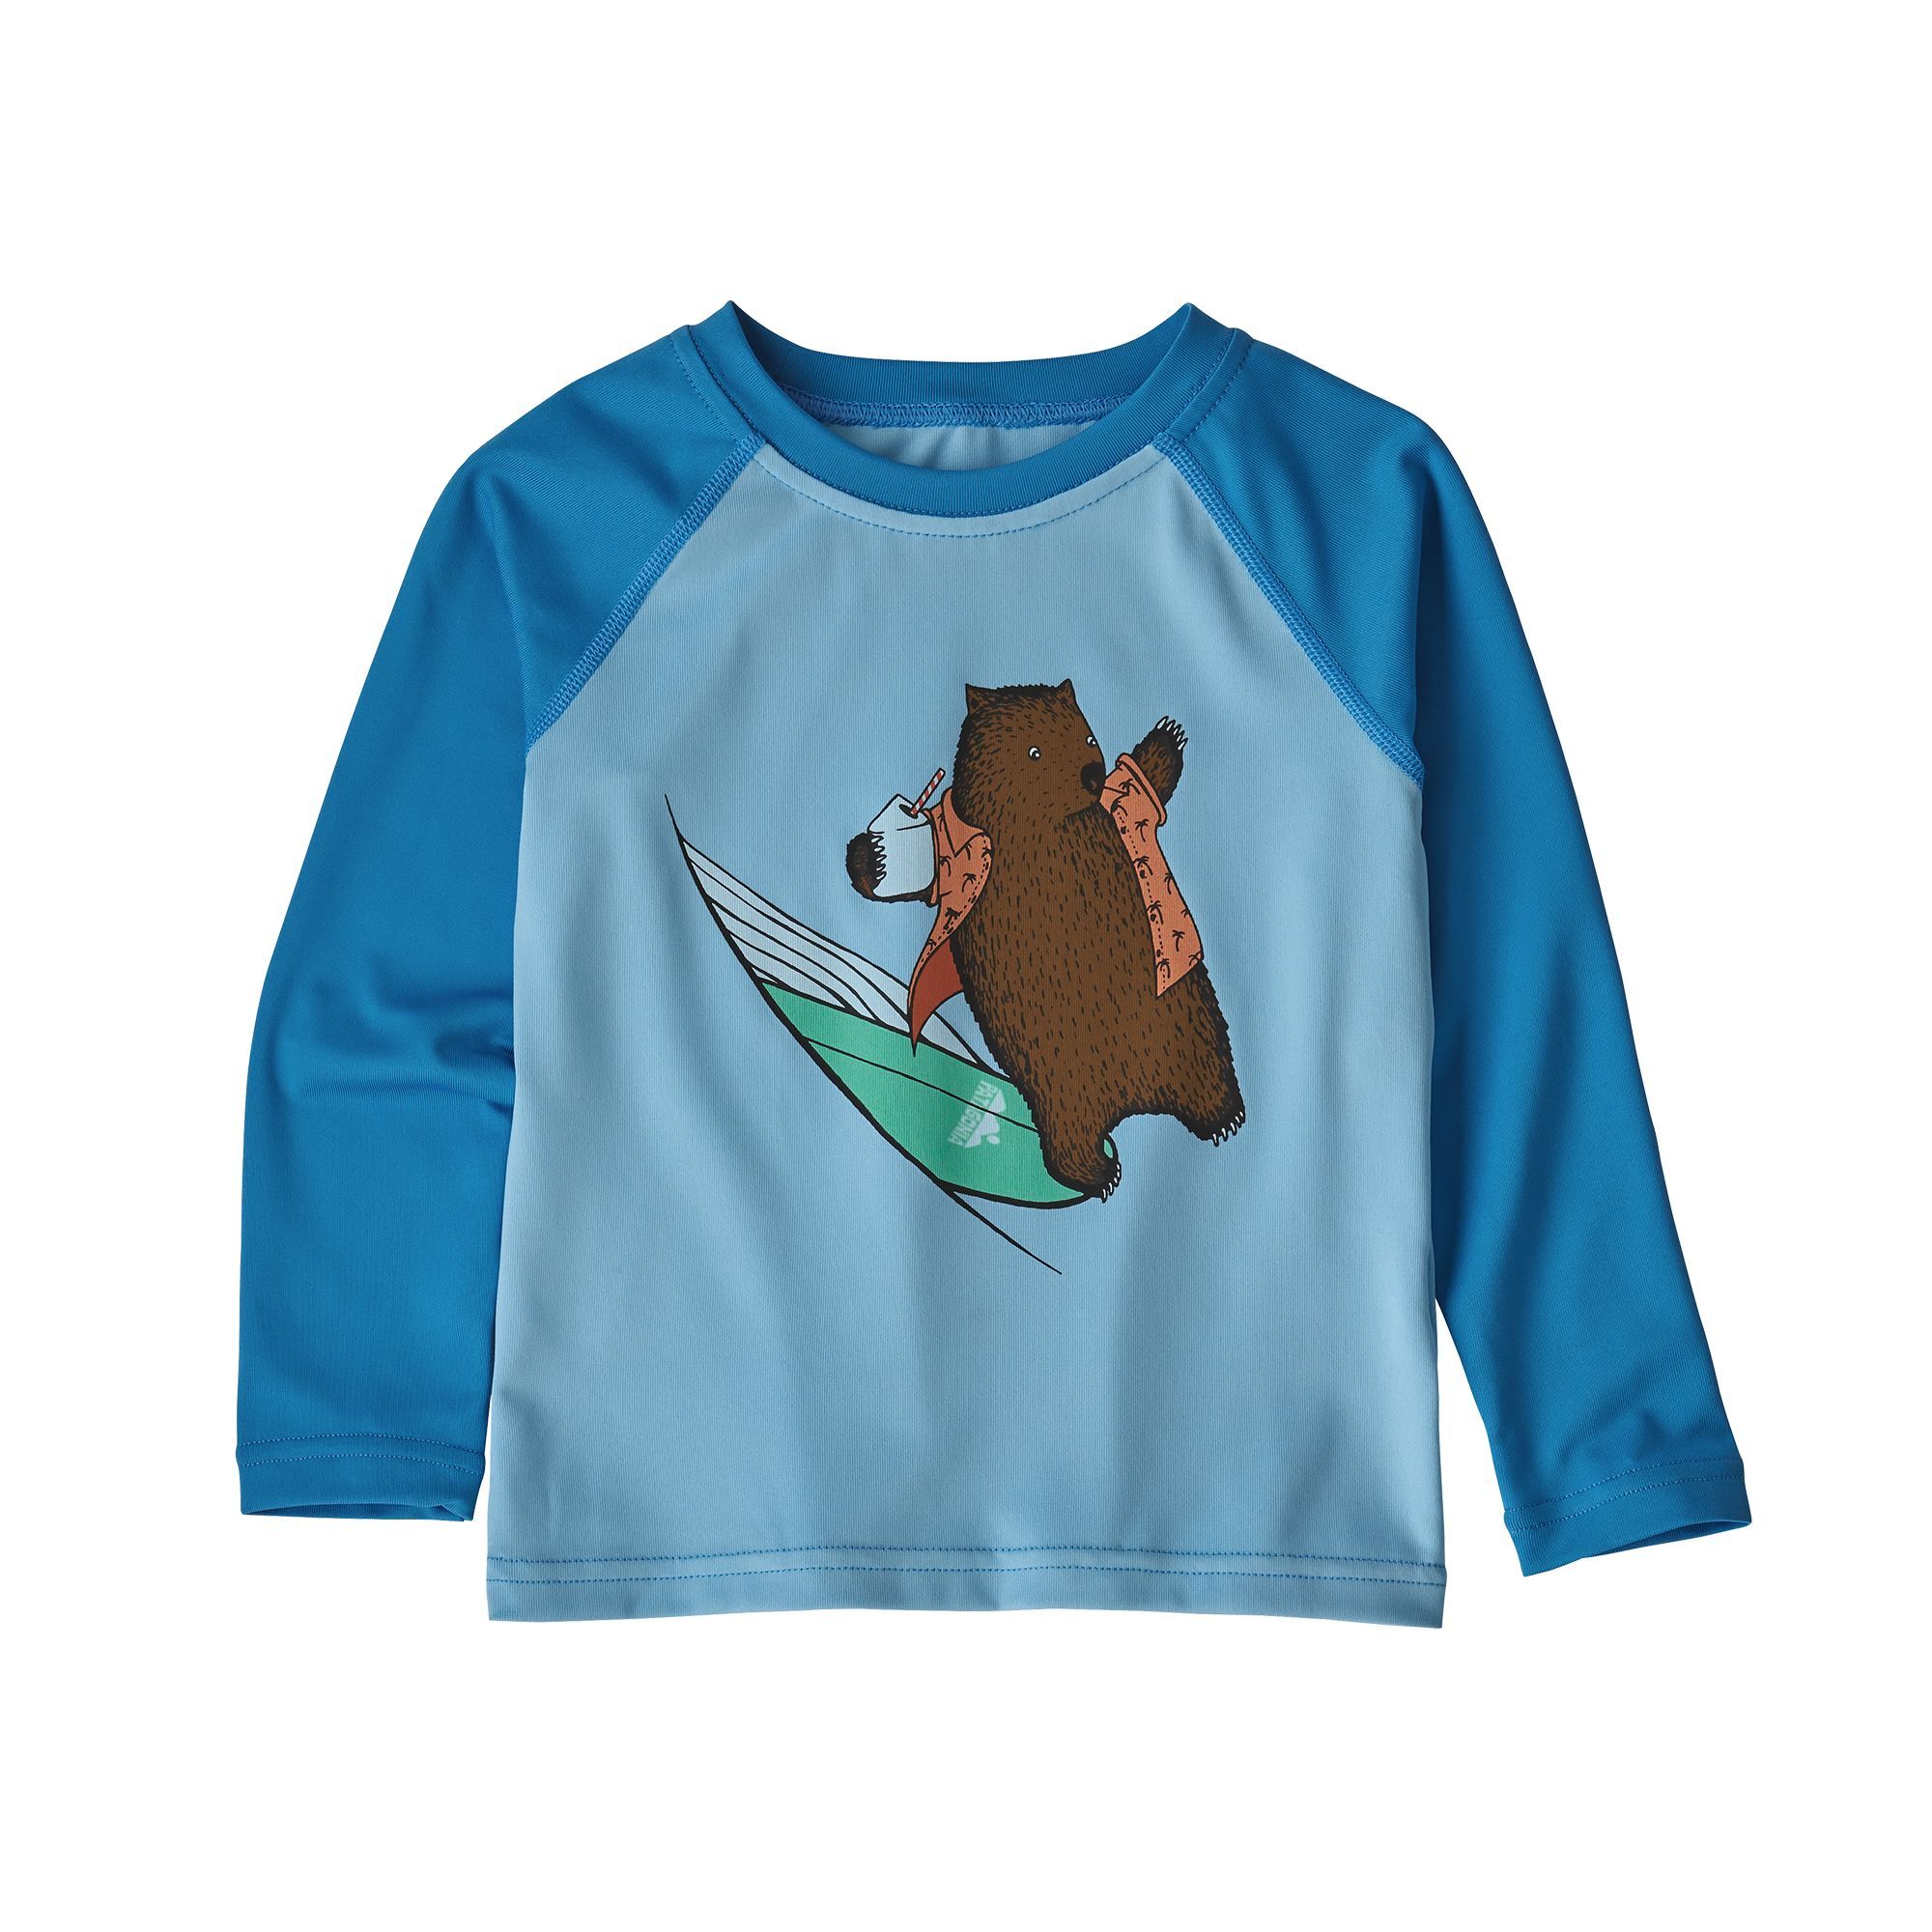 Patagonia - Baby Cap SW Crew - Camiseta - Niños